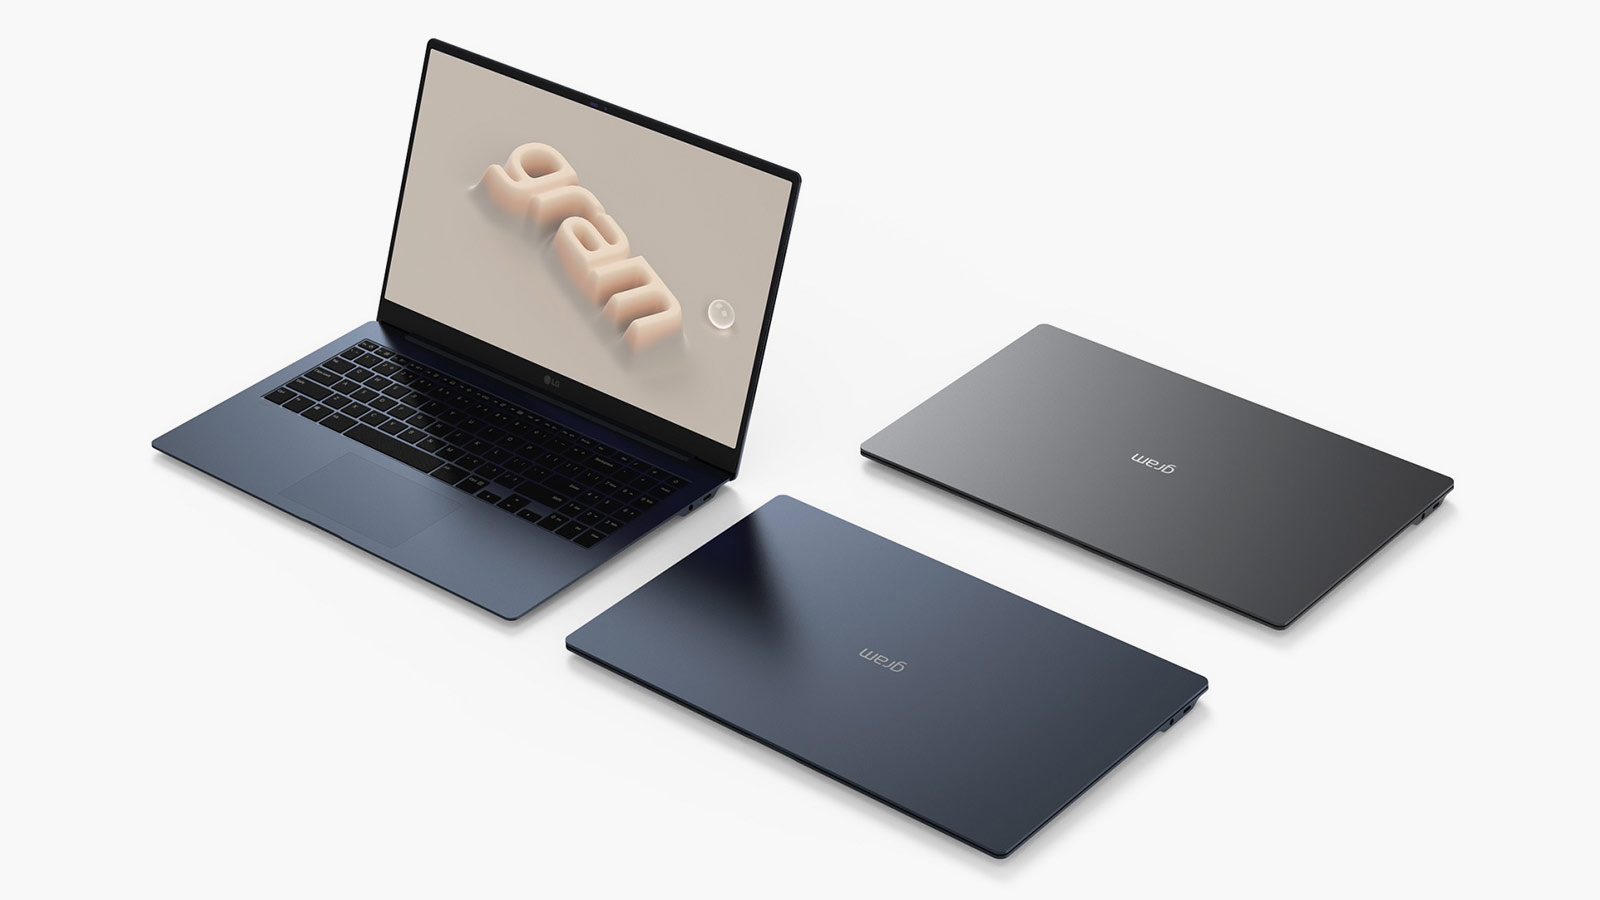 LG Gram Style and LG Gram Ultraslim Laptops